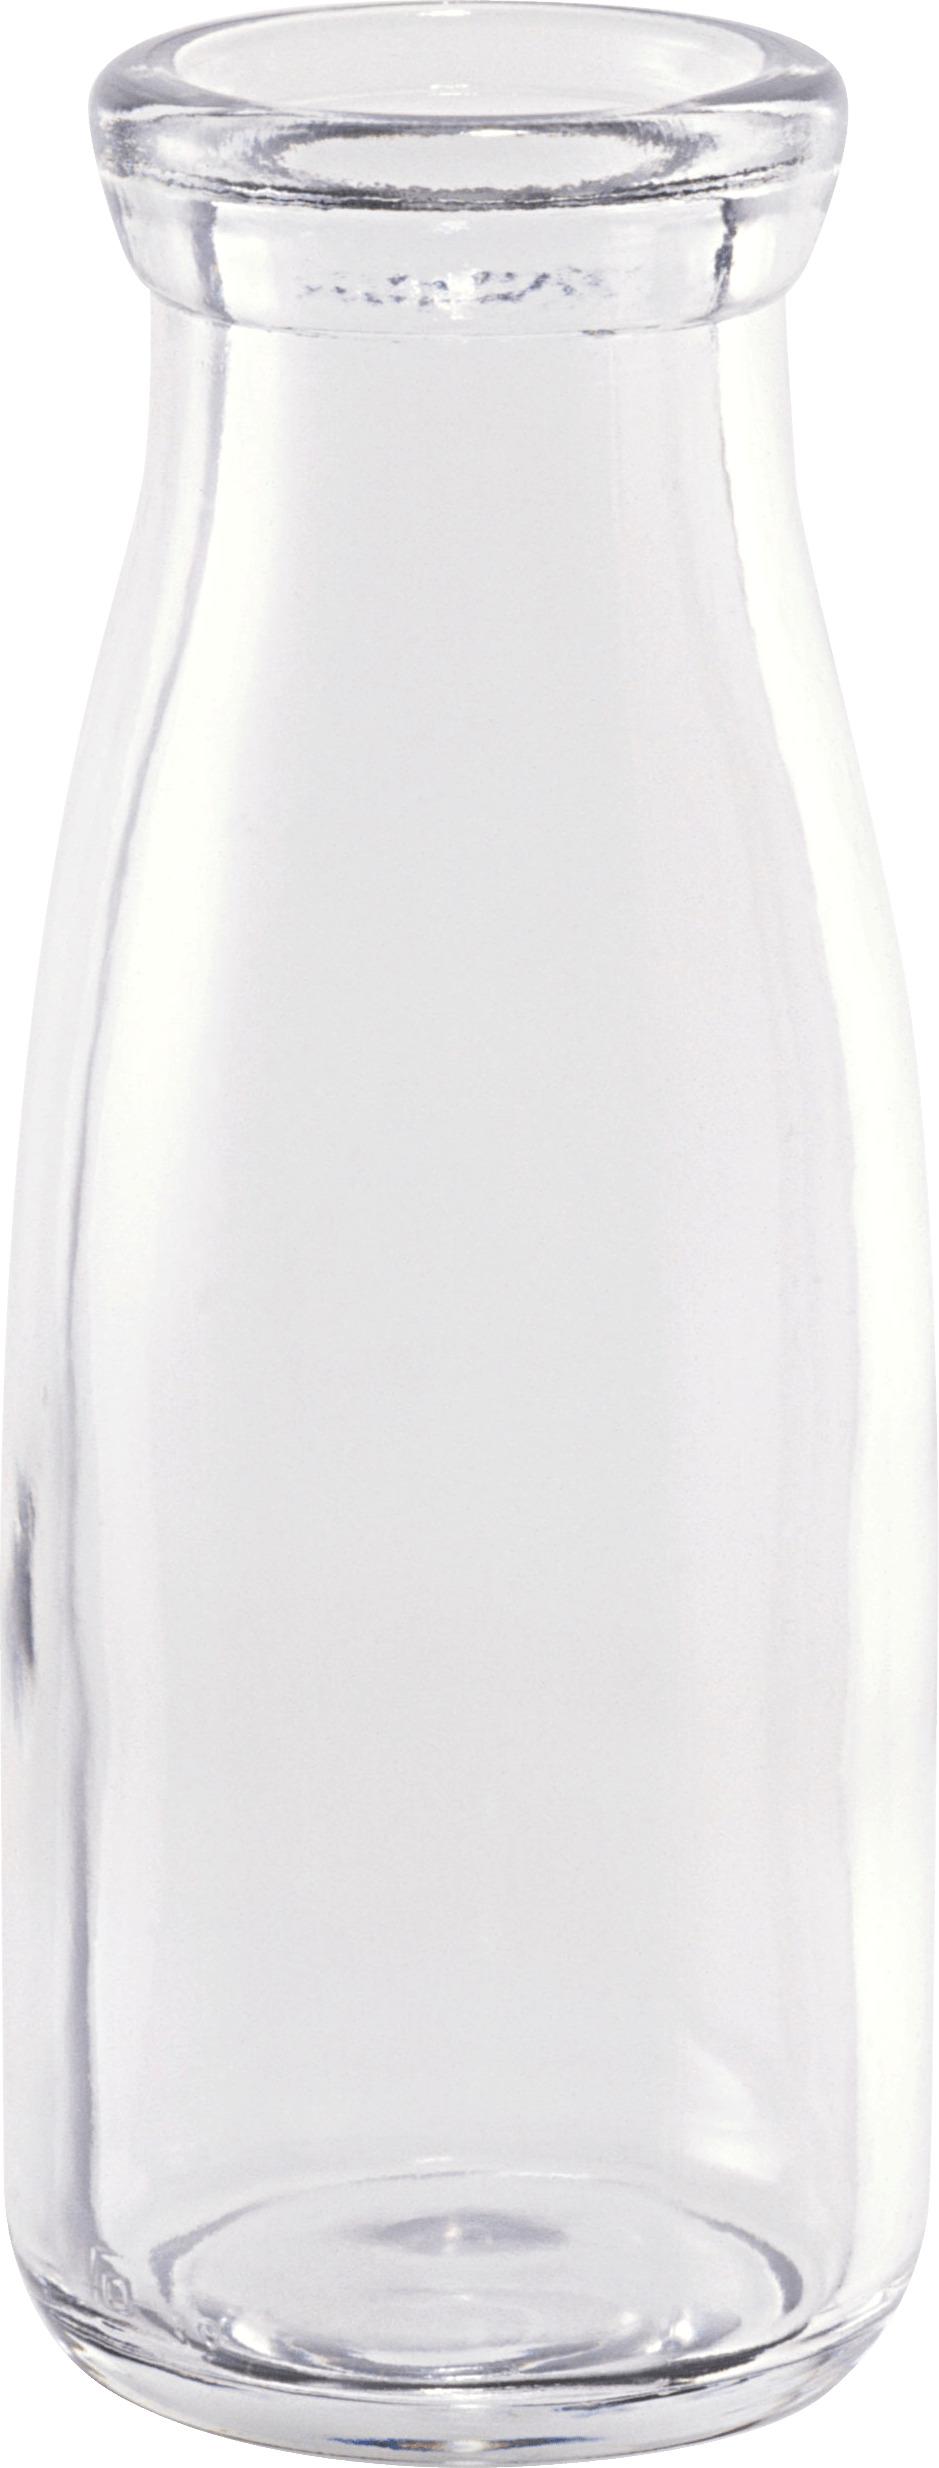 Empty Milk Glass Bottle png transparent